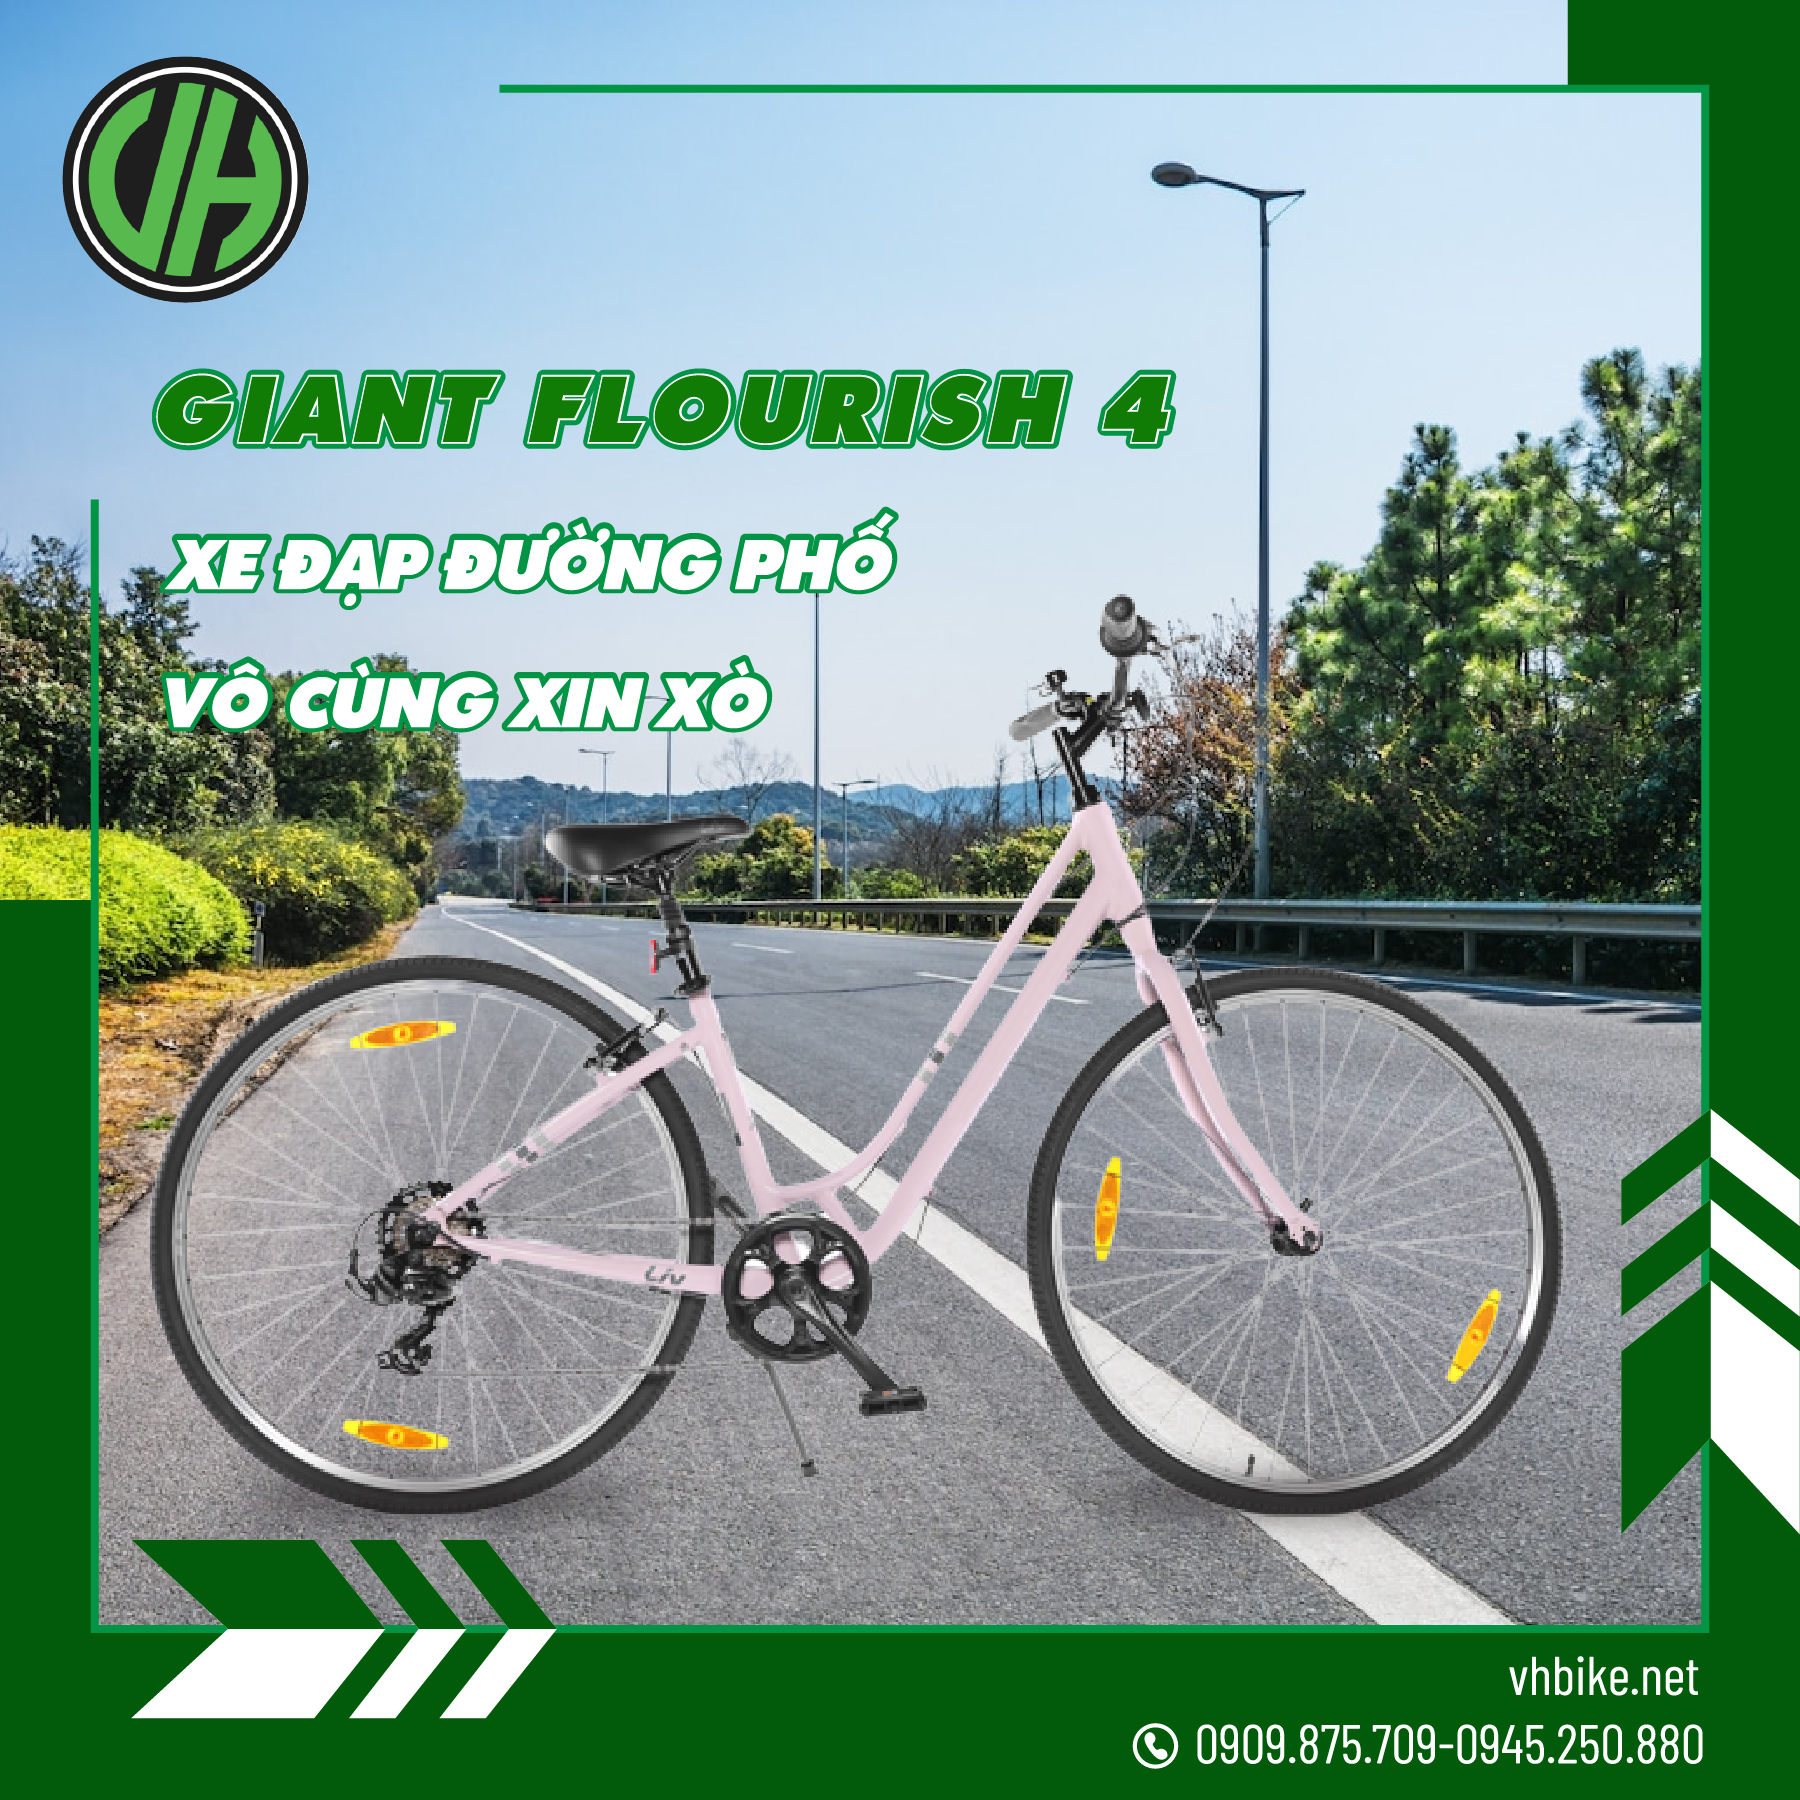 giant-flourish-4-xe-dap-duong-pho-vo-cung-xin-xo